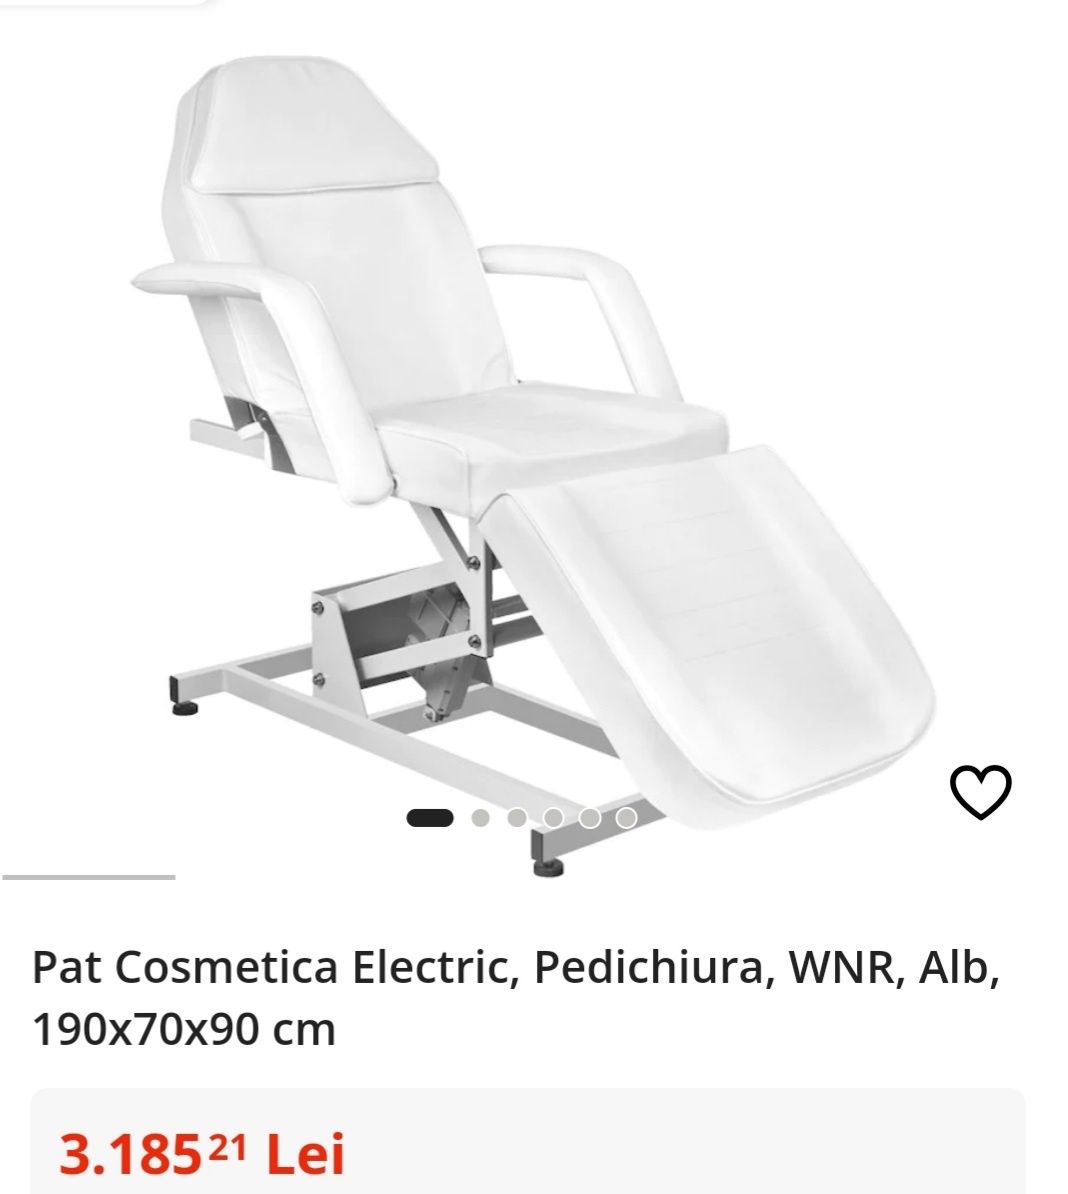 Pat Cosmetica Electric, Pedichiura, 190x70x90 cm